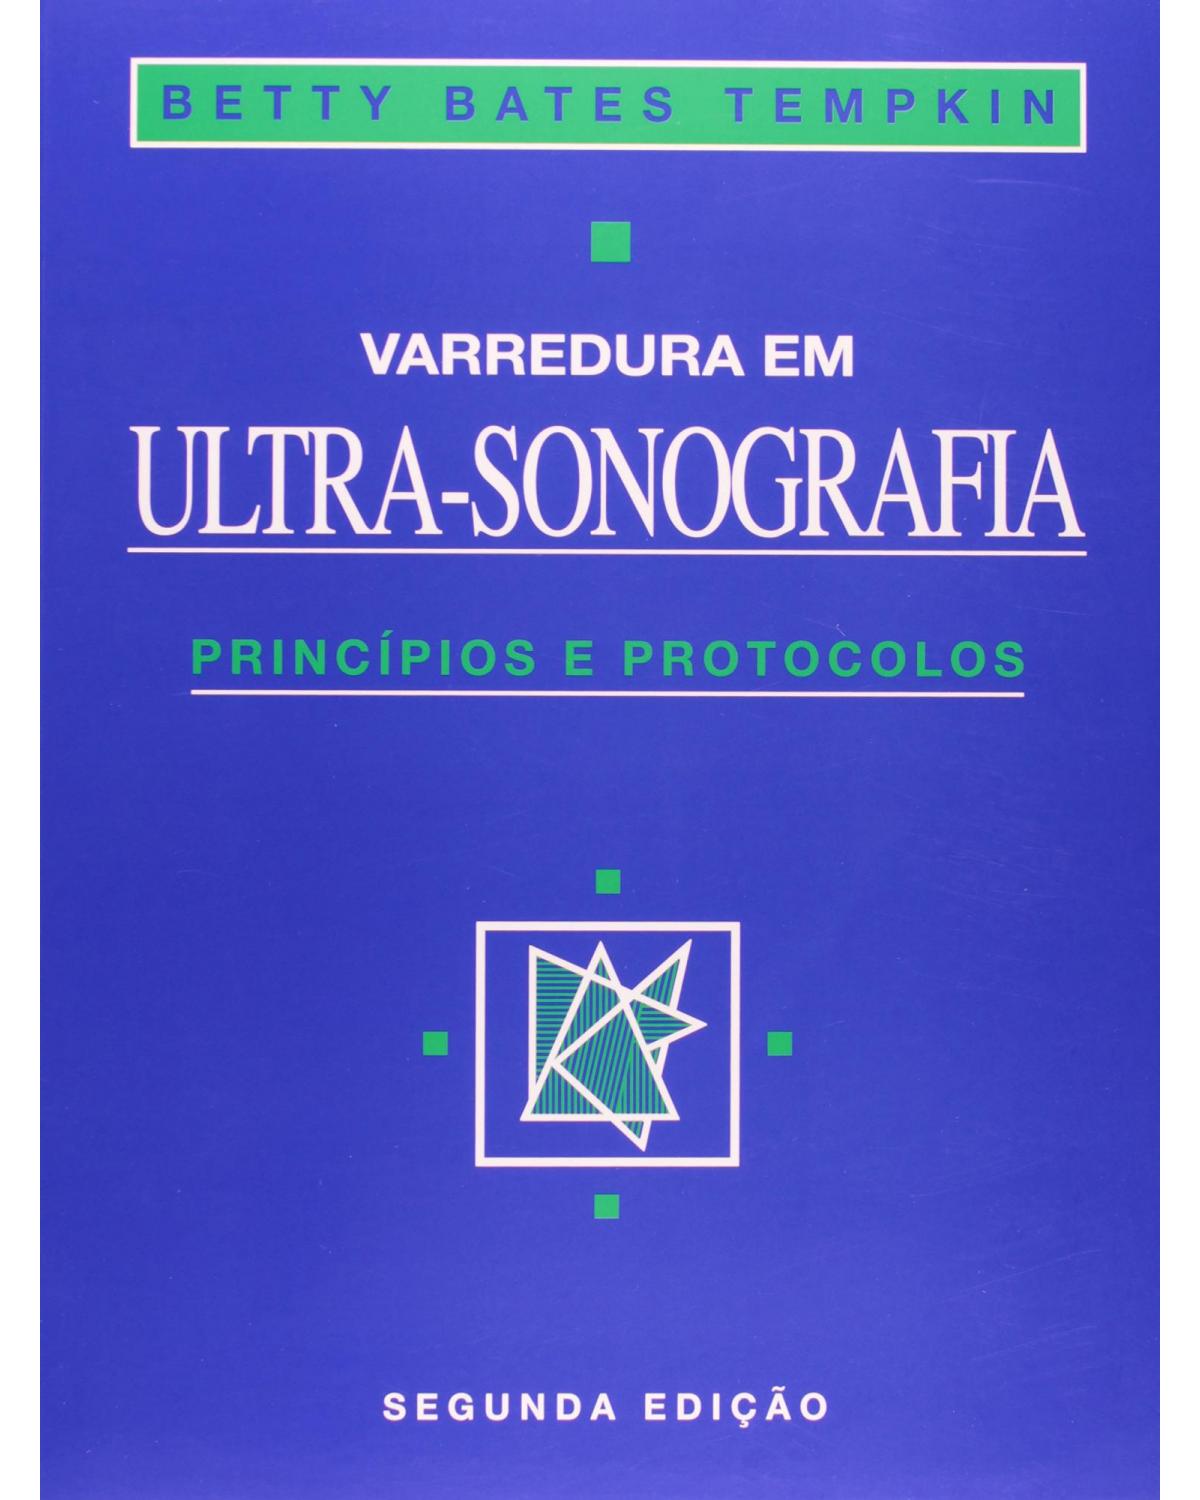 Varredura em ultra-sonografia - Princípios e protocolos - 2ª Edição | 2000